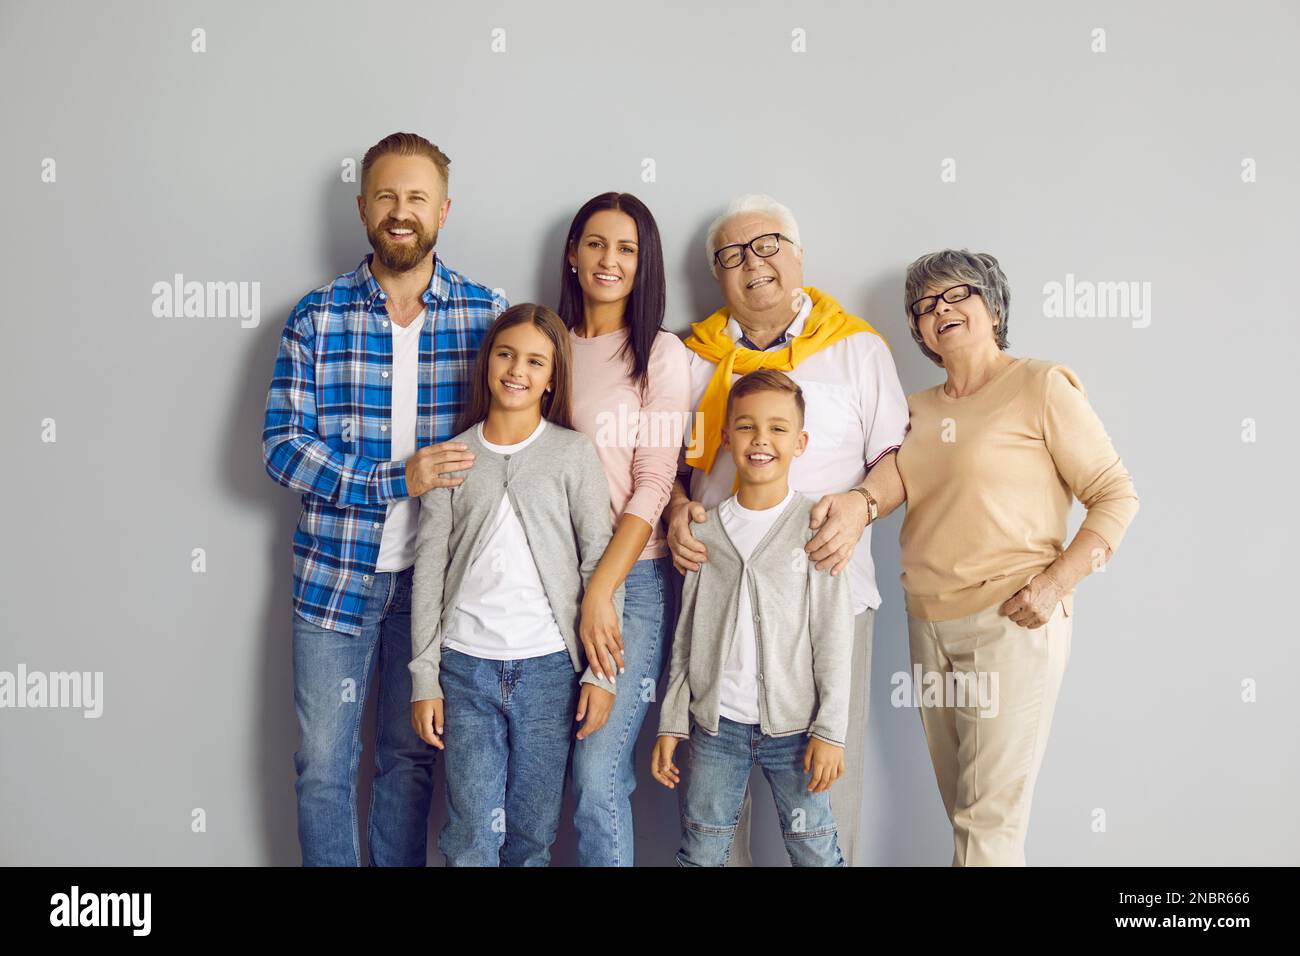 Gruppenporträt einer glücklichen Familie, die alle zusammen an einer grauen Wand im Studio steht Stockfoto